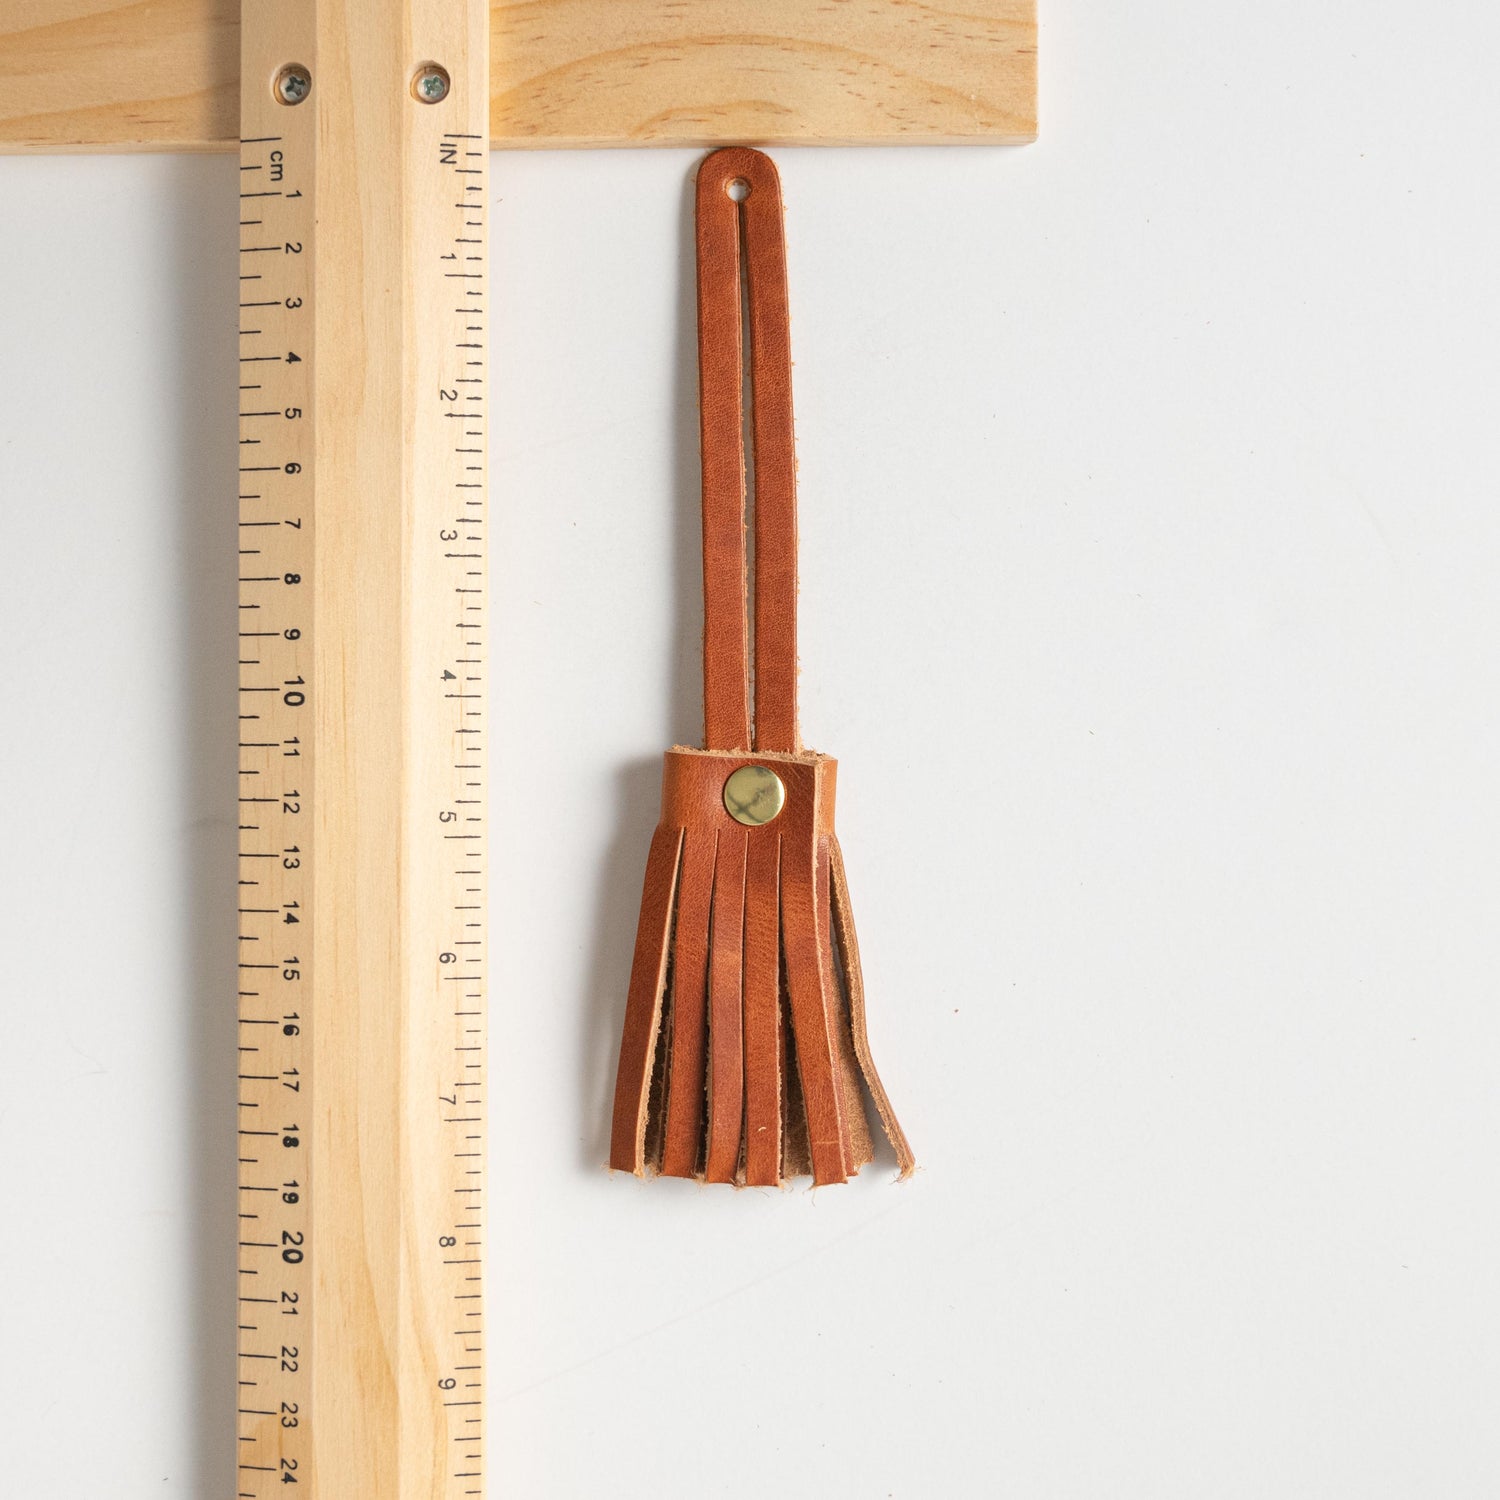 Oak Mini Tassel- leather tassel keychain - KMM &amp; Co.